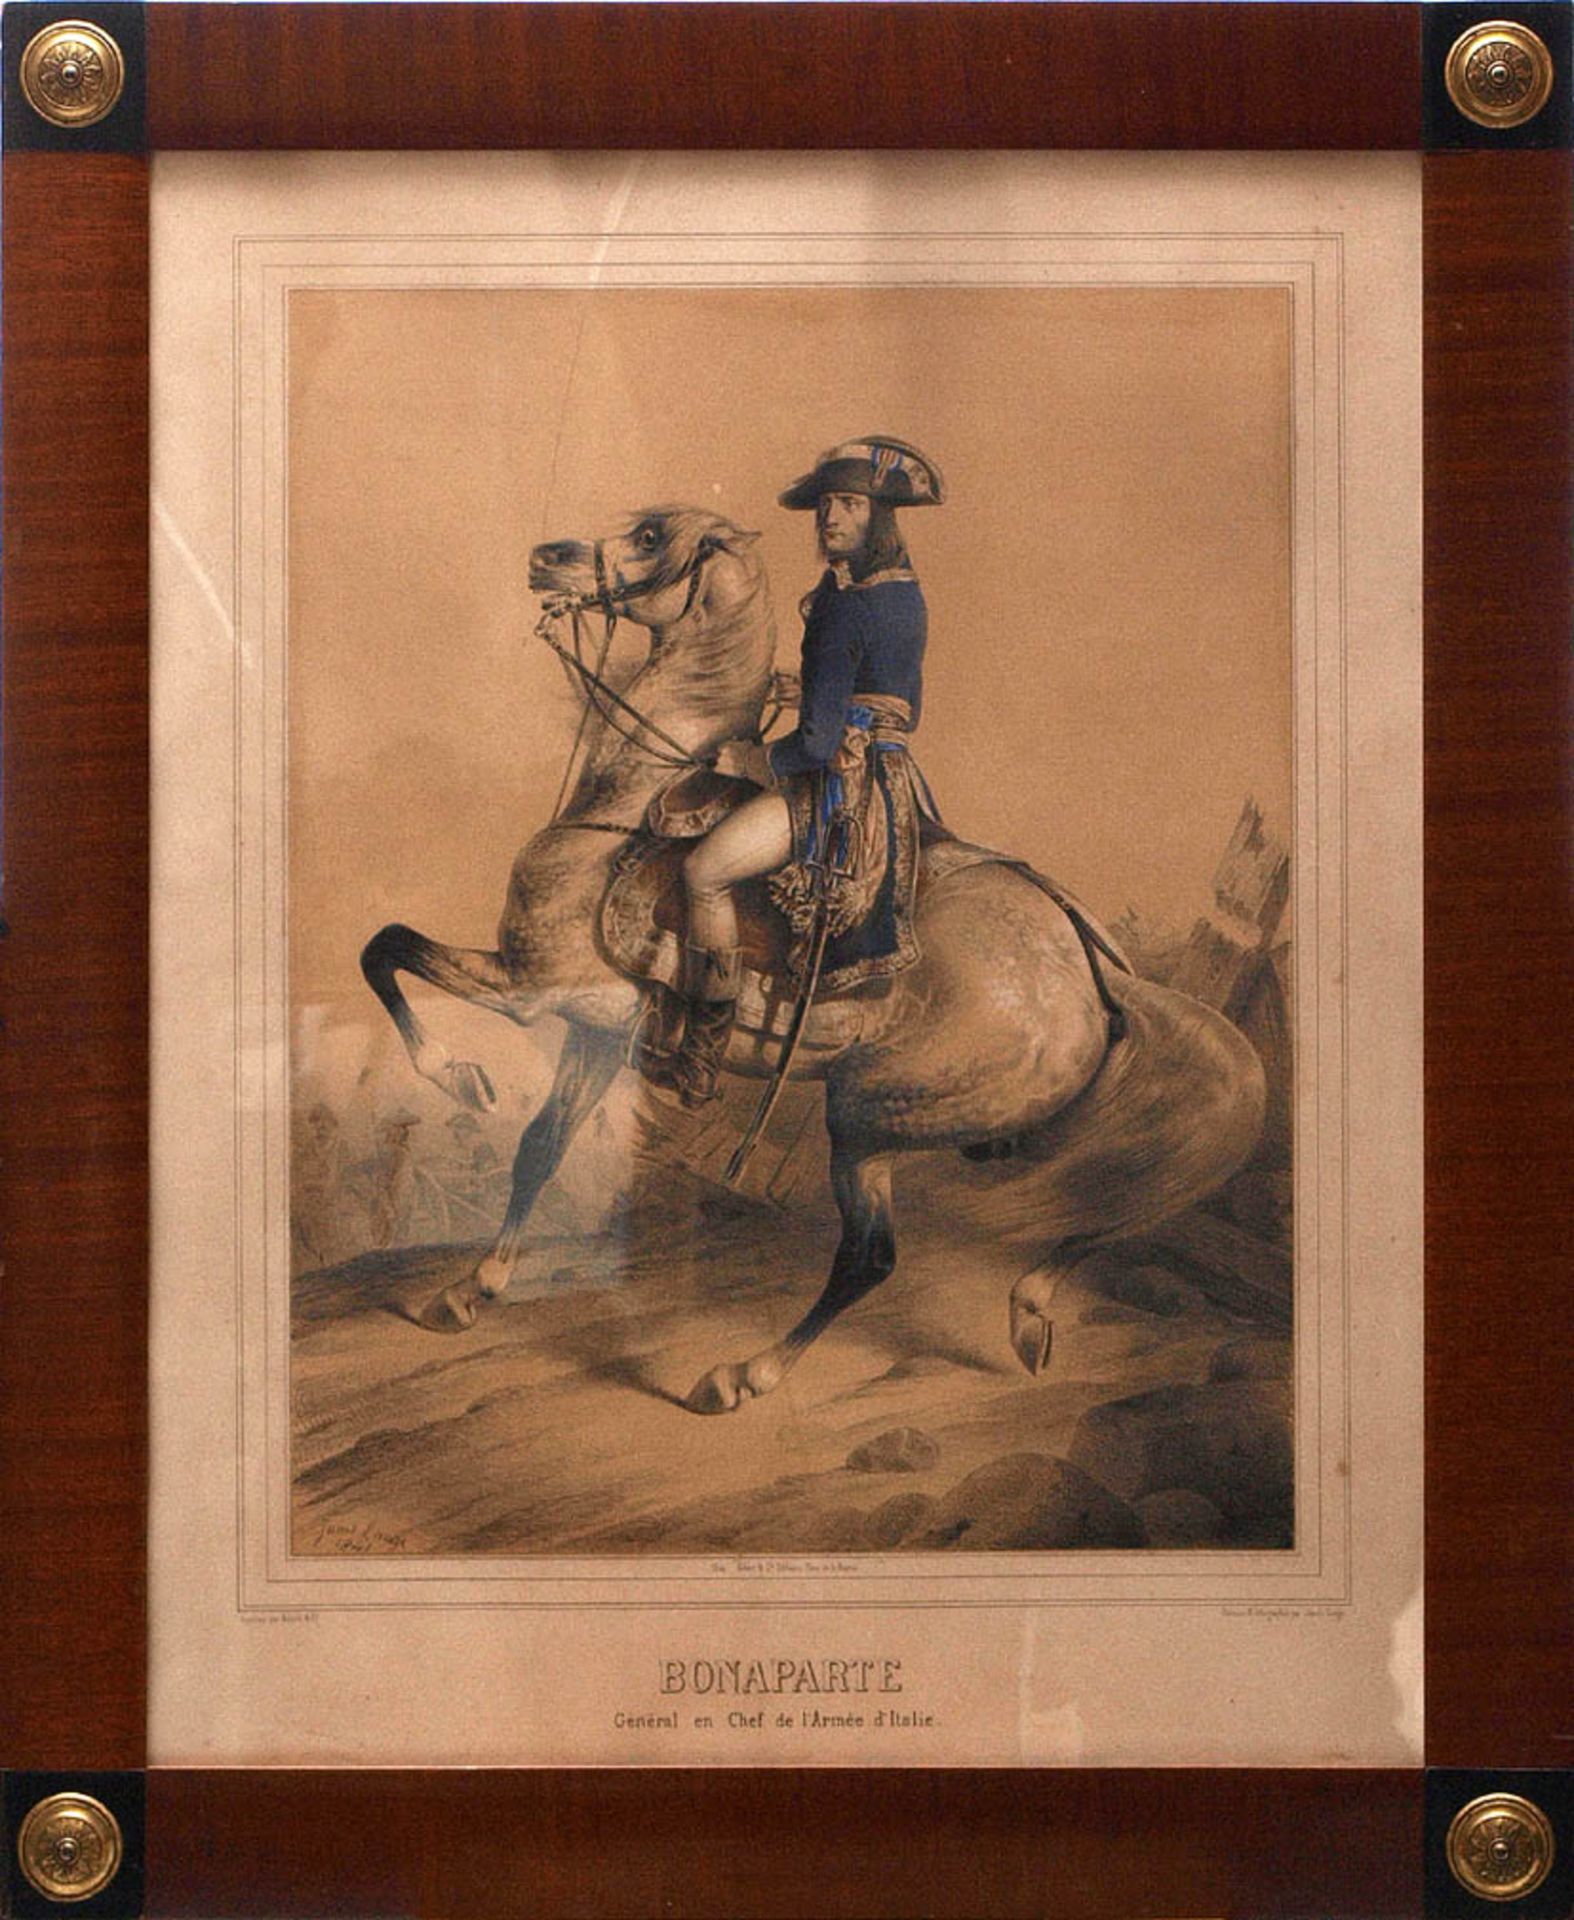 Janet-Lange, Ange Louis, 1815 - 1872 Bildnis von Napoleon Bonaparte zu Pferd, hinter ihm Soldaten im